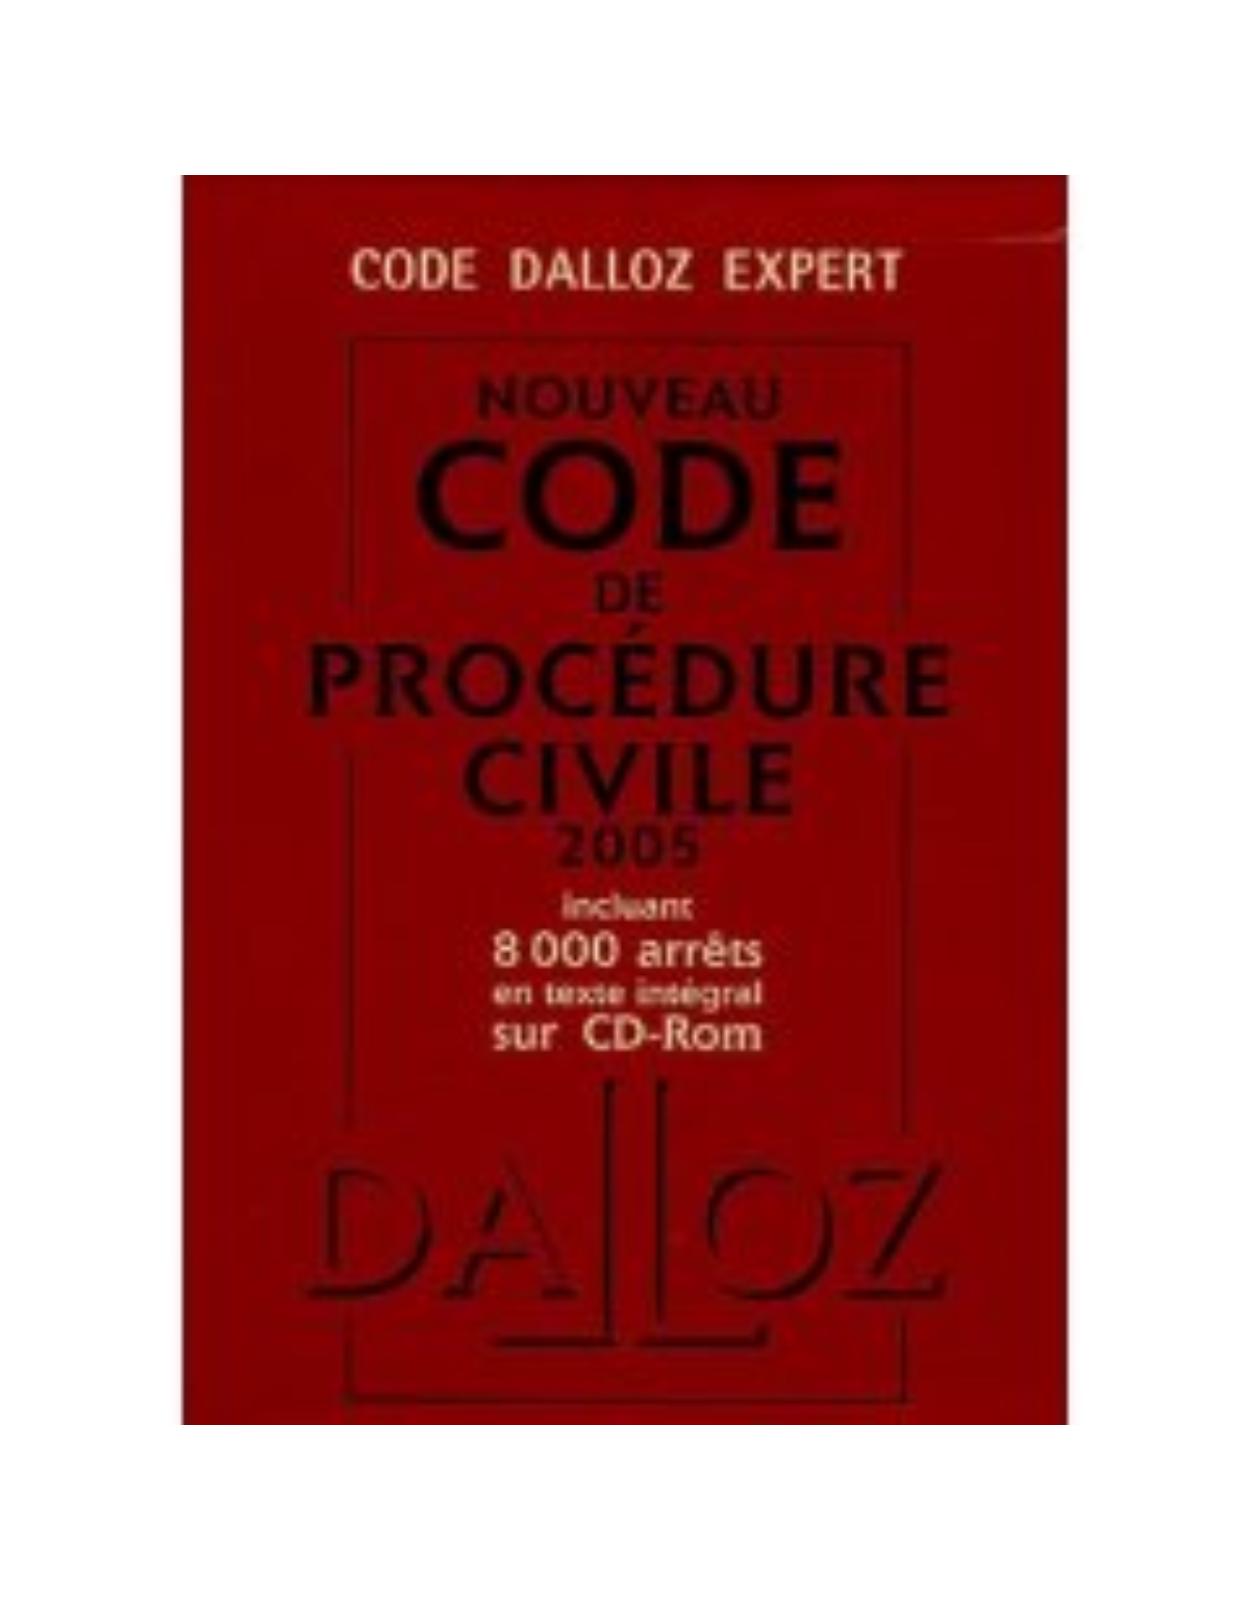 Code Dalloz Expert. Nouveau code de procédure civile 2005 (plus CD)